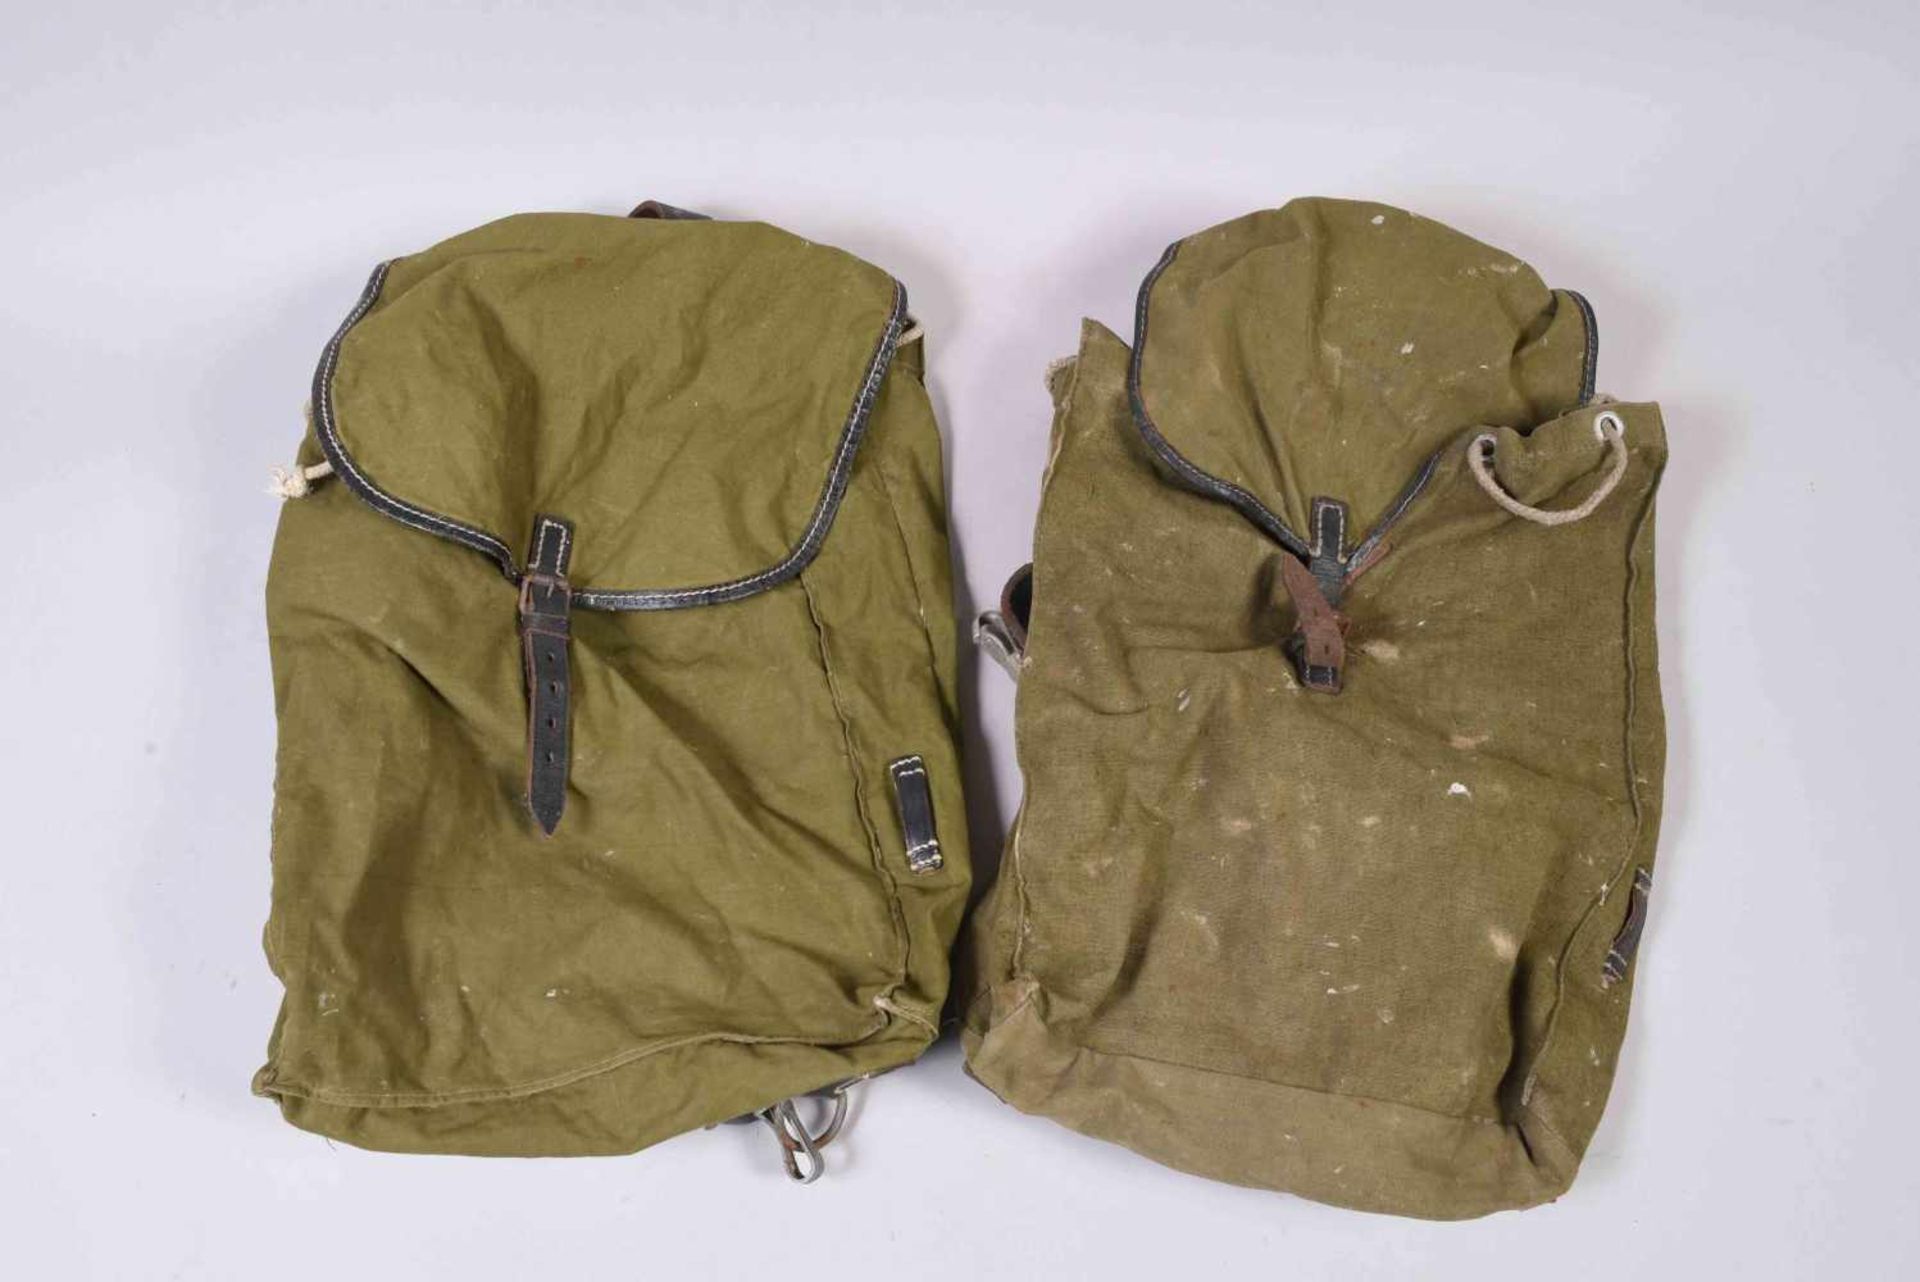 All- 2 petits sacs à dos WH en toile kaki à bretelles en cuir. Les deux datés 1940. Etat d’usage,